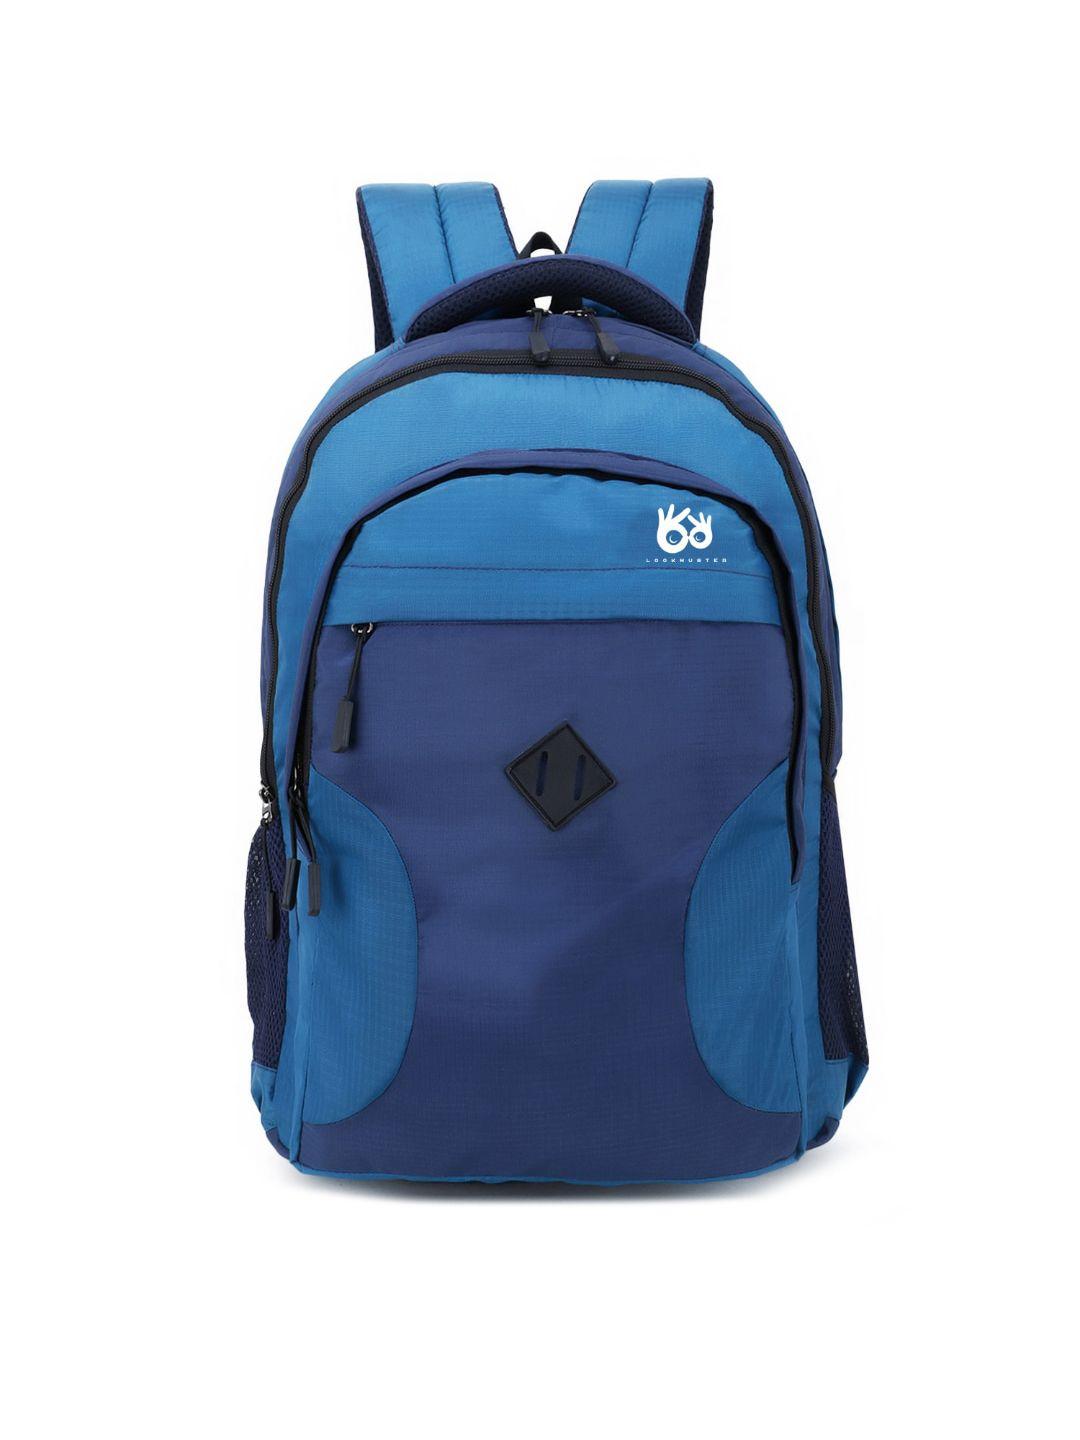 lookmuster adults unisex blue waterproof laptop backpack